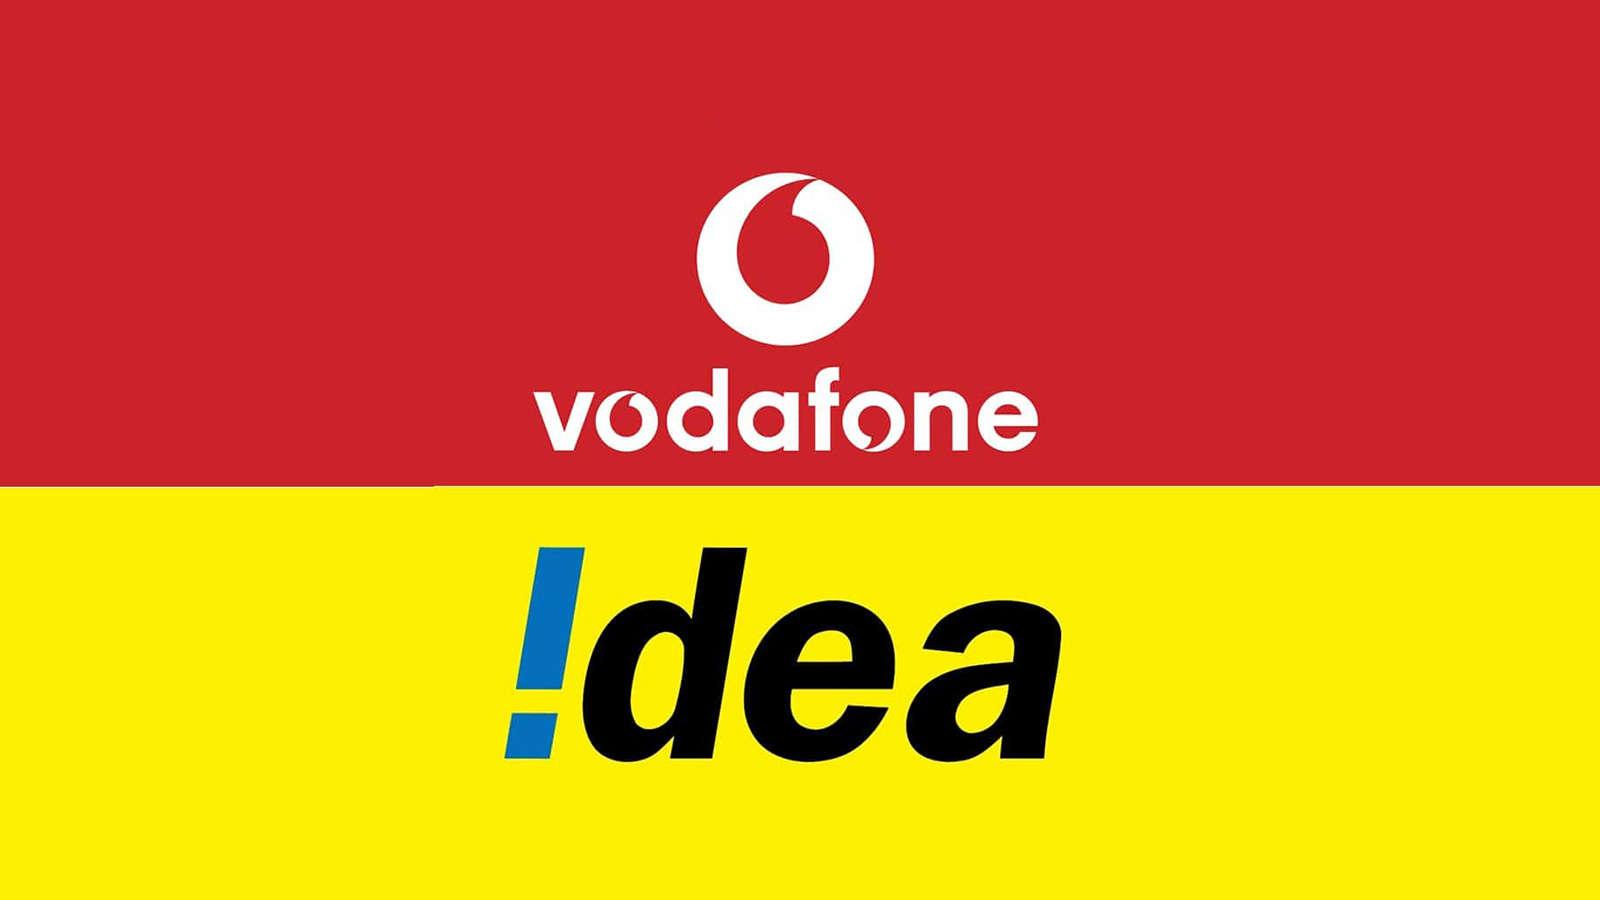 Vodafone Idea Ltd Wallpapers - Wallpaper Cave